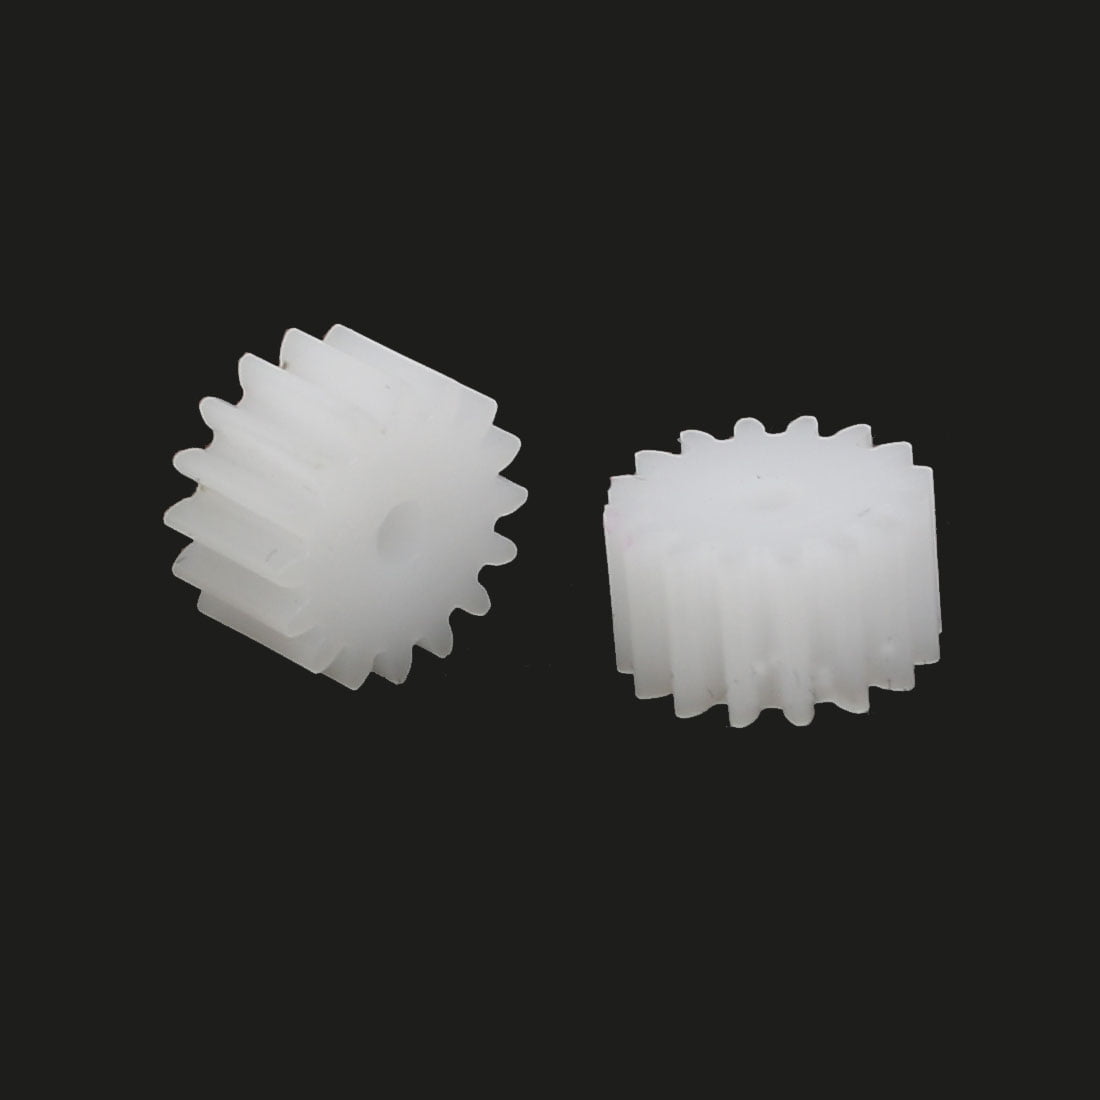 20pcs 16 Teeth 2mm Hole Dia Plastic Gear Wheel for Toy Car Motor Shaft